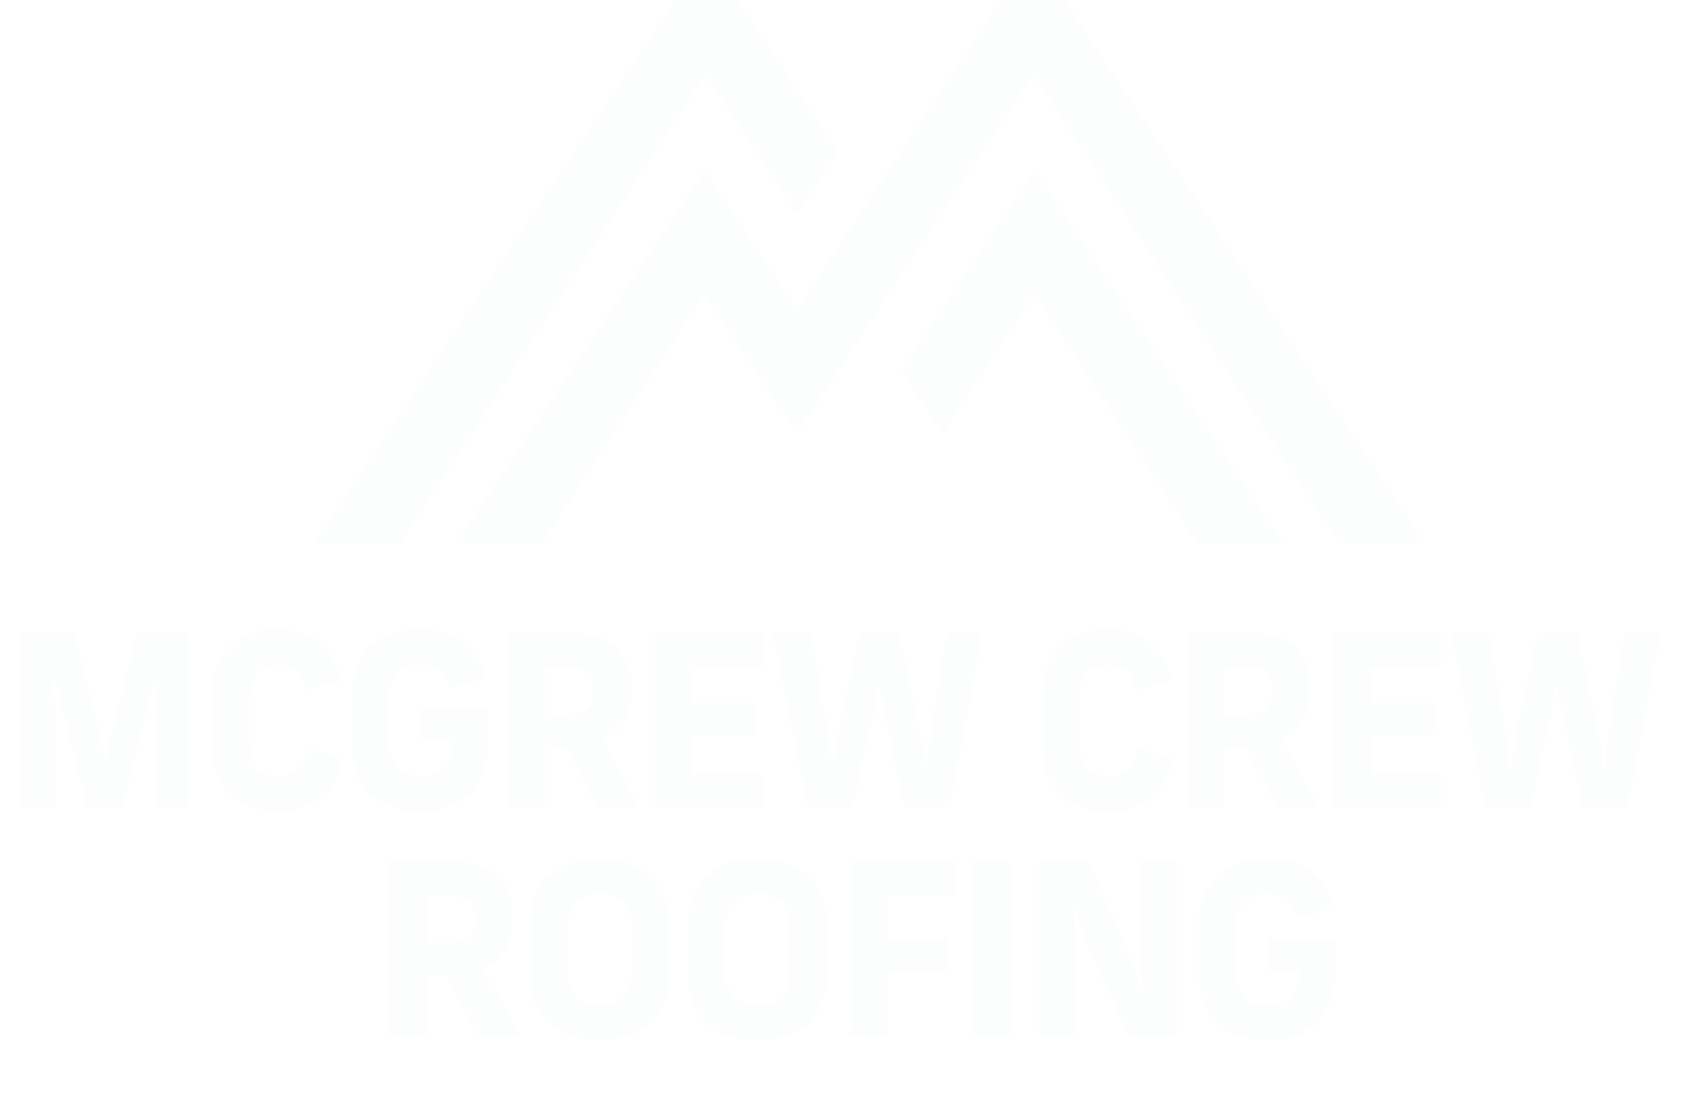 McGrew Crew Roofing